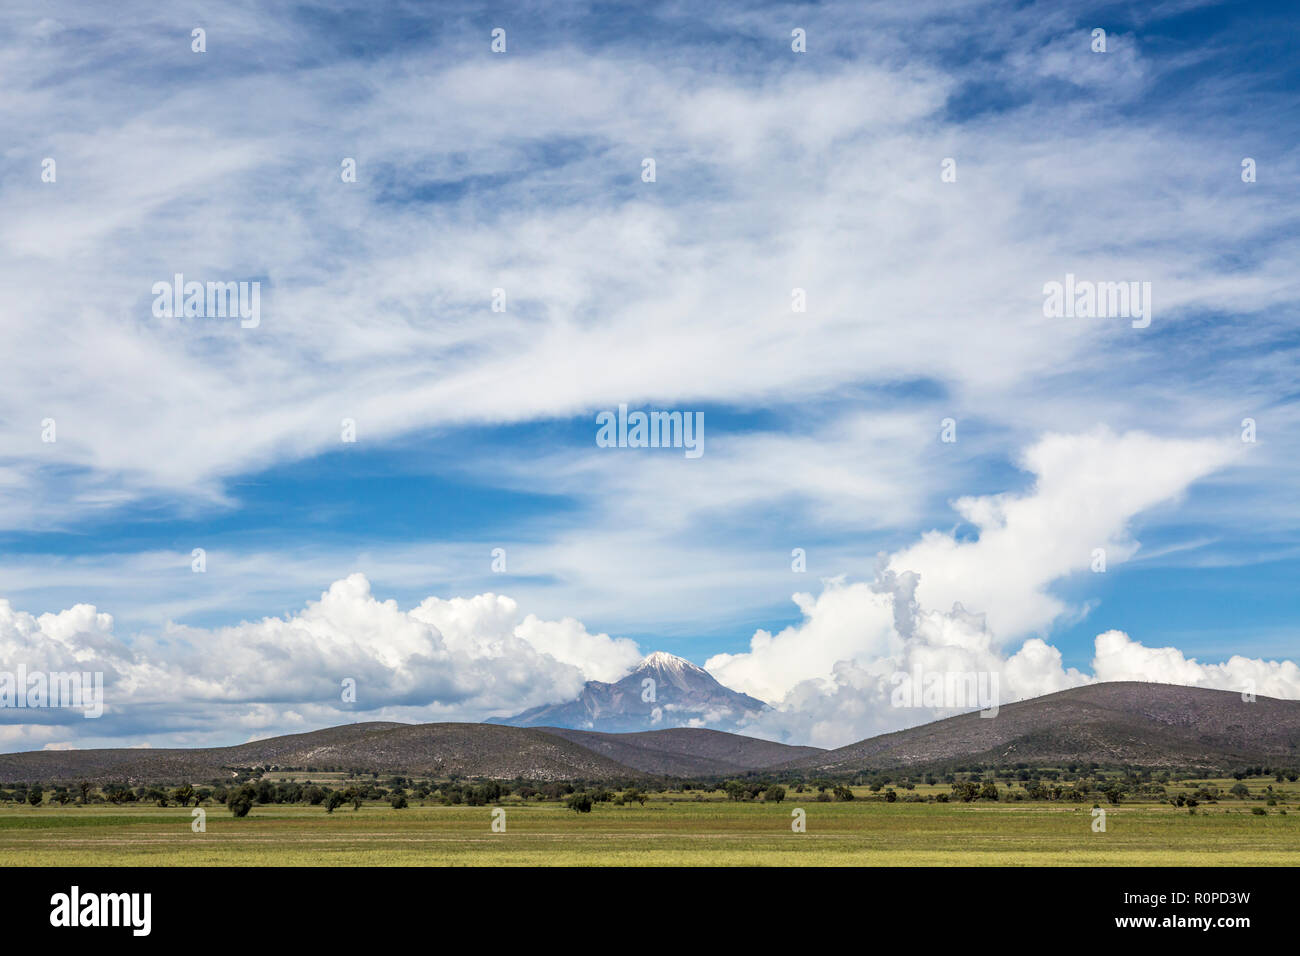 El Pico de Orizaba volcano as viewed from Tehuacán, Puebla State, Mexico, North America Stock Photo